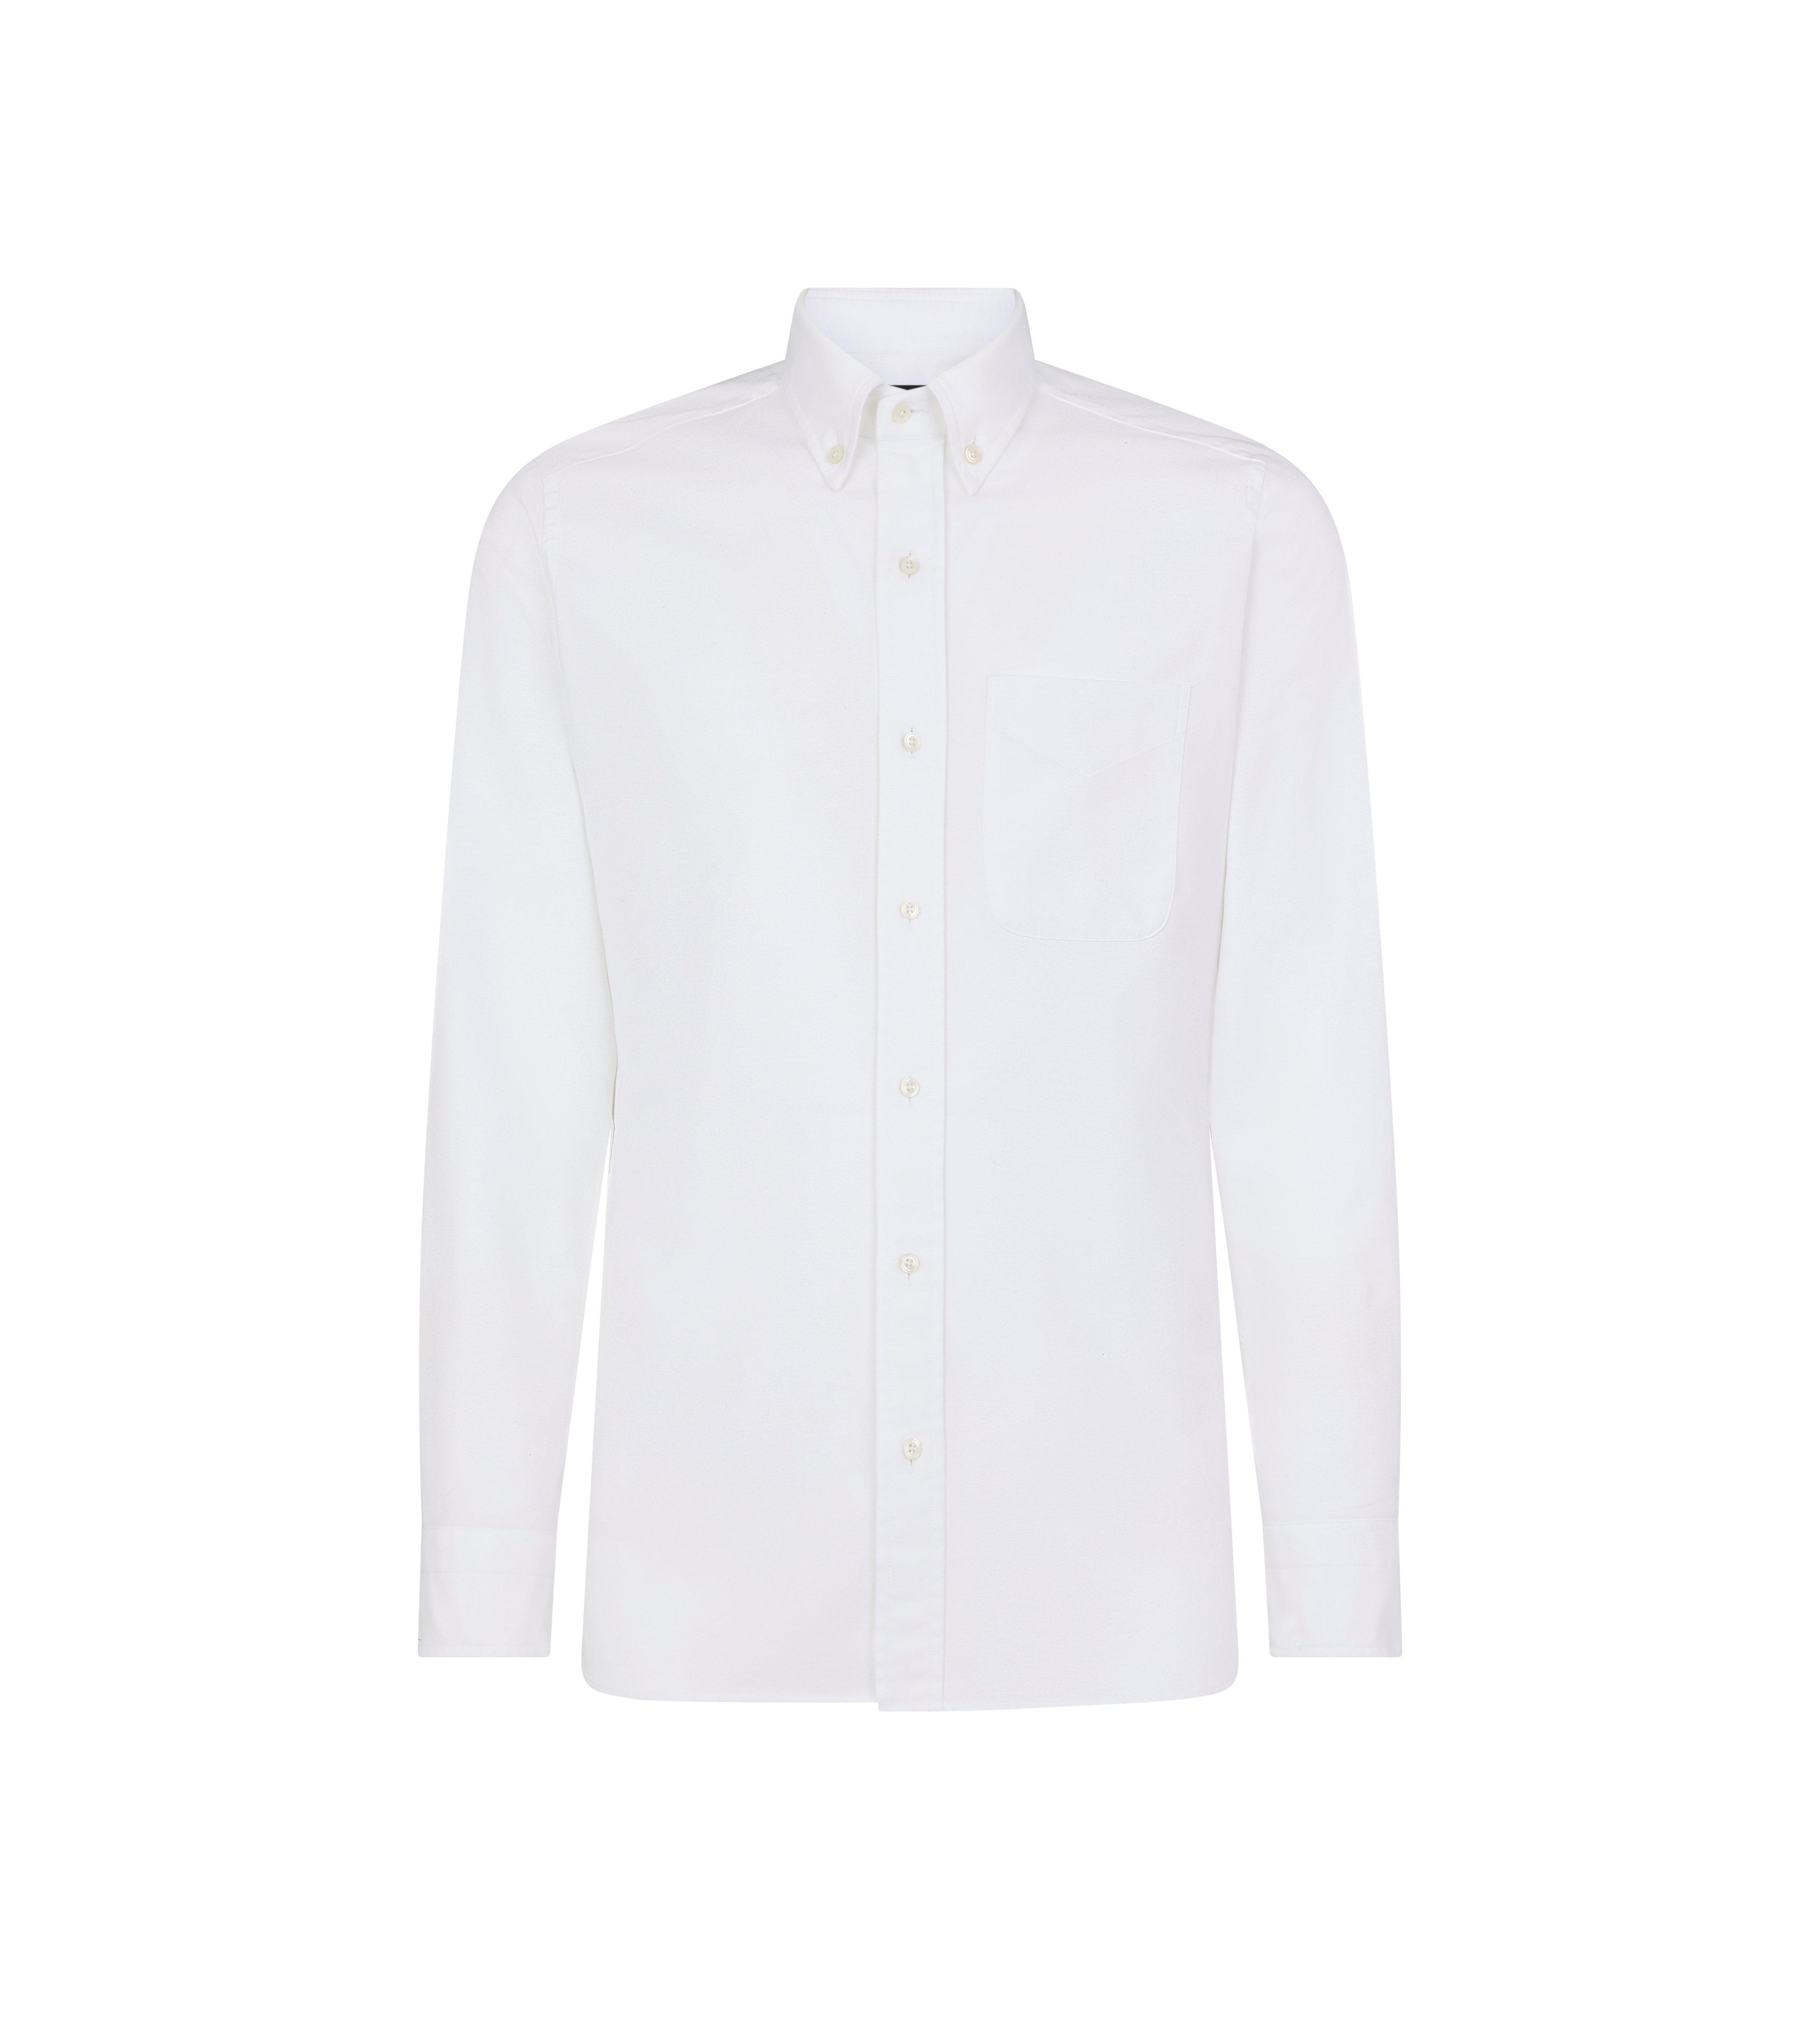 American Vintage Men's Shirt - White - L